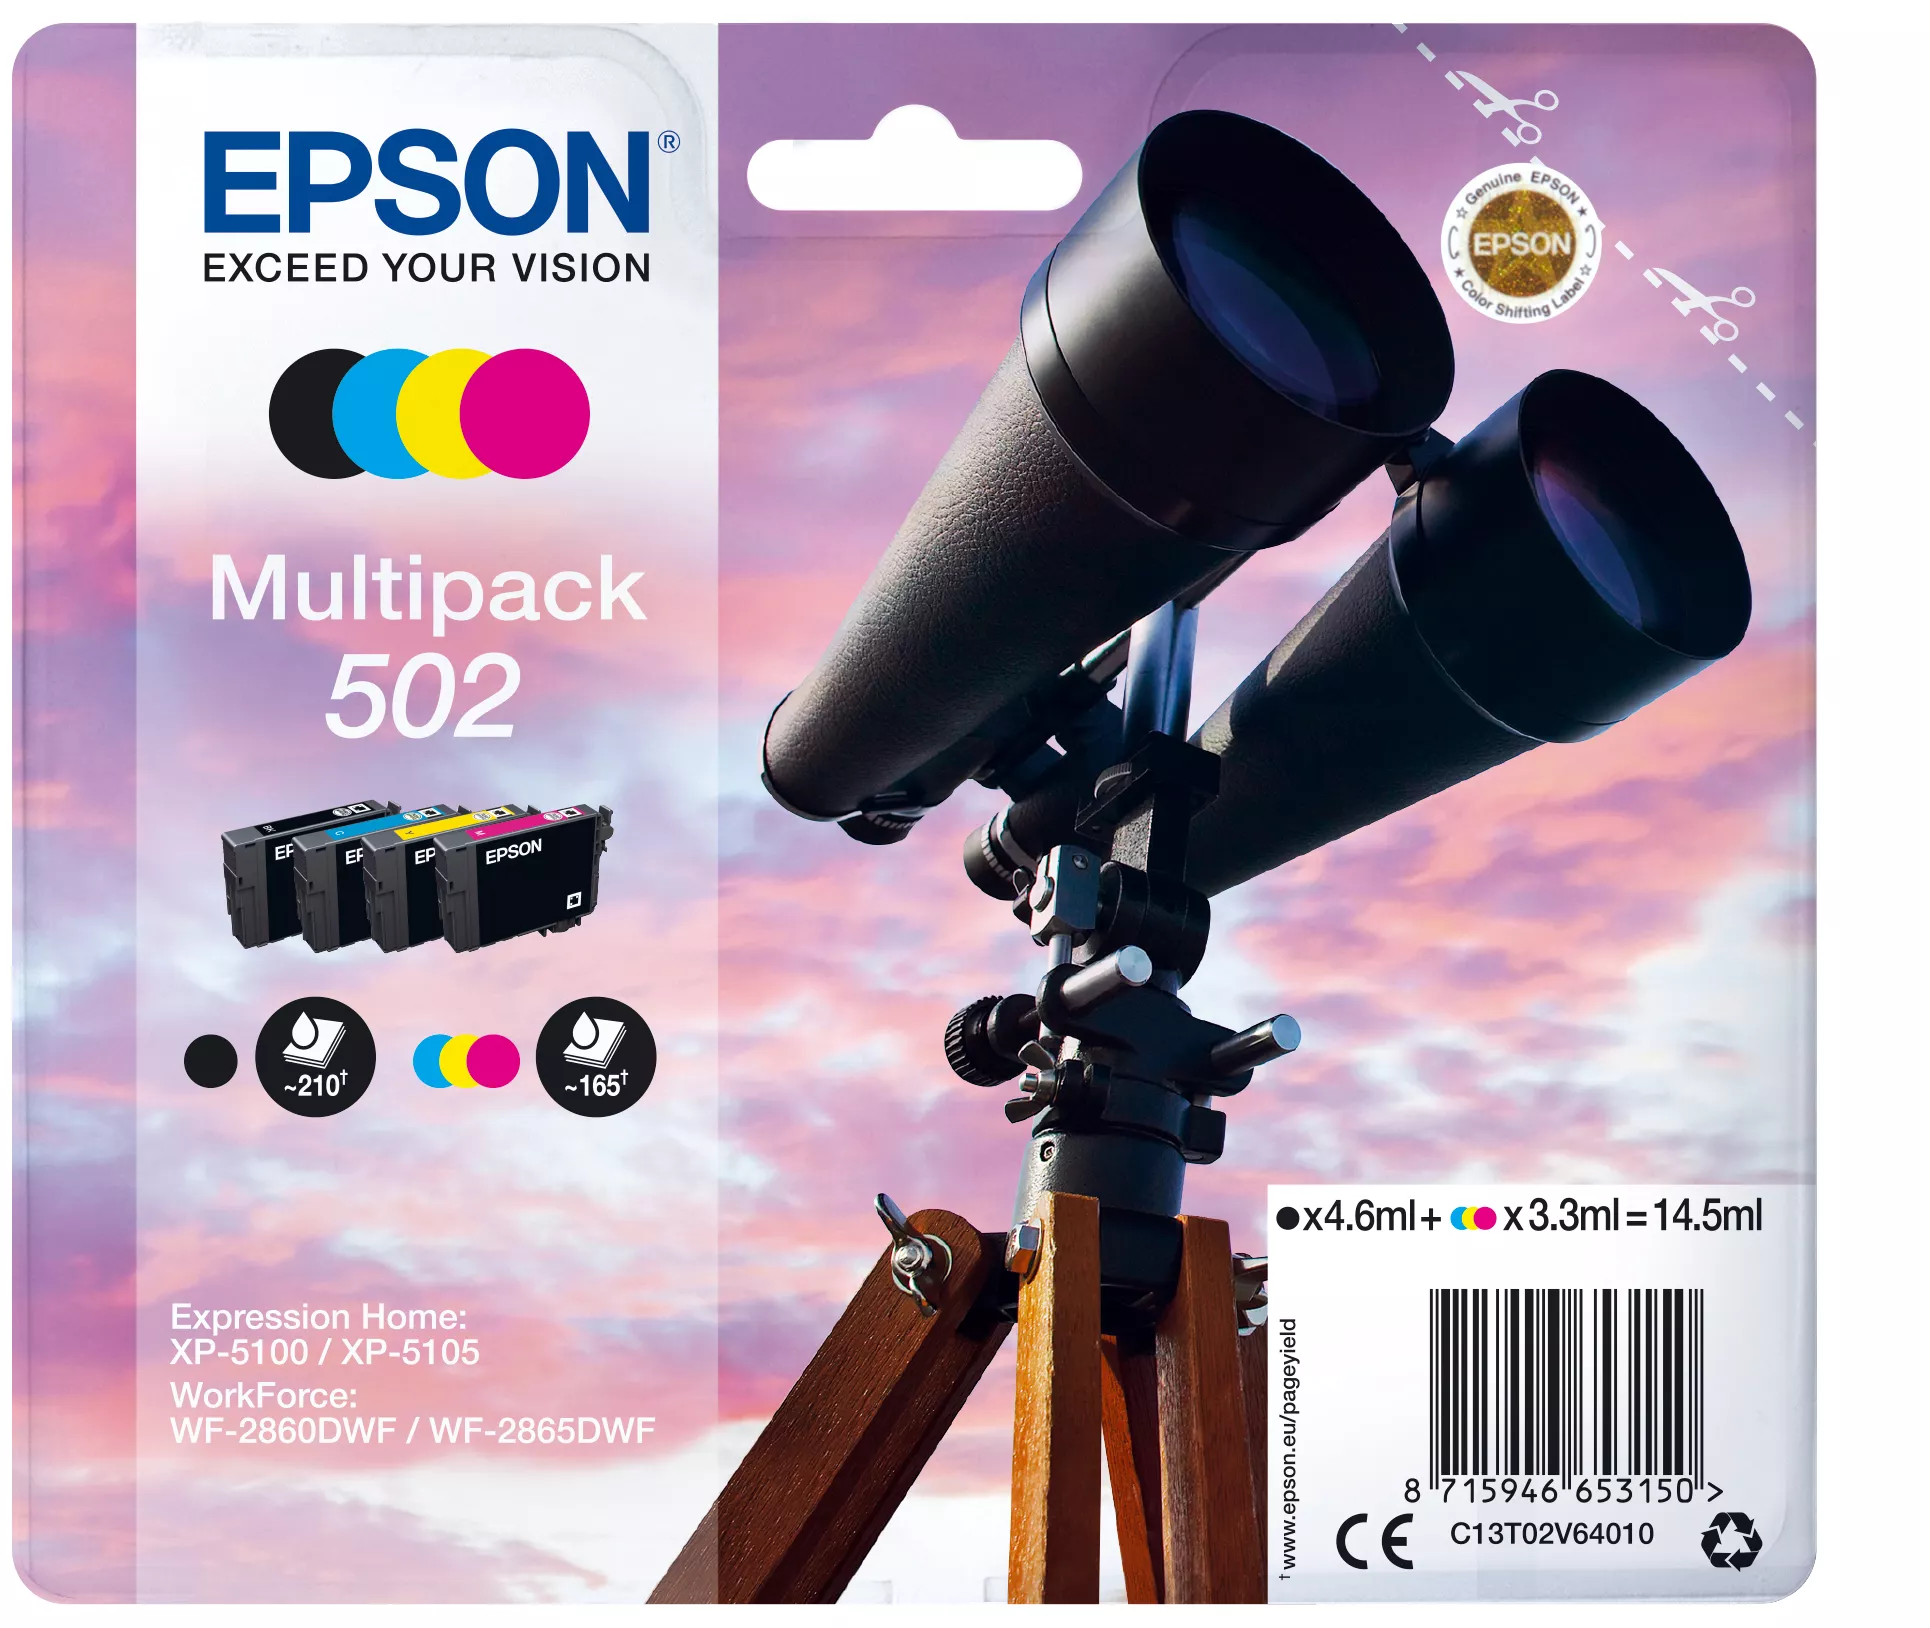 Vente Cartouches d'encre EPSON Multipack 4-colours 502 Ink sur hello RSE